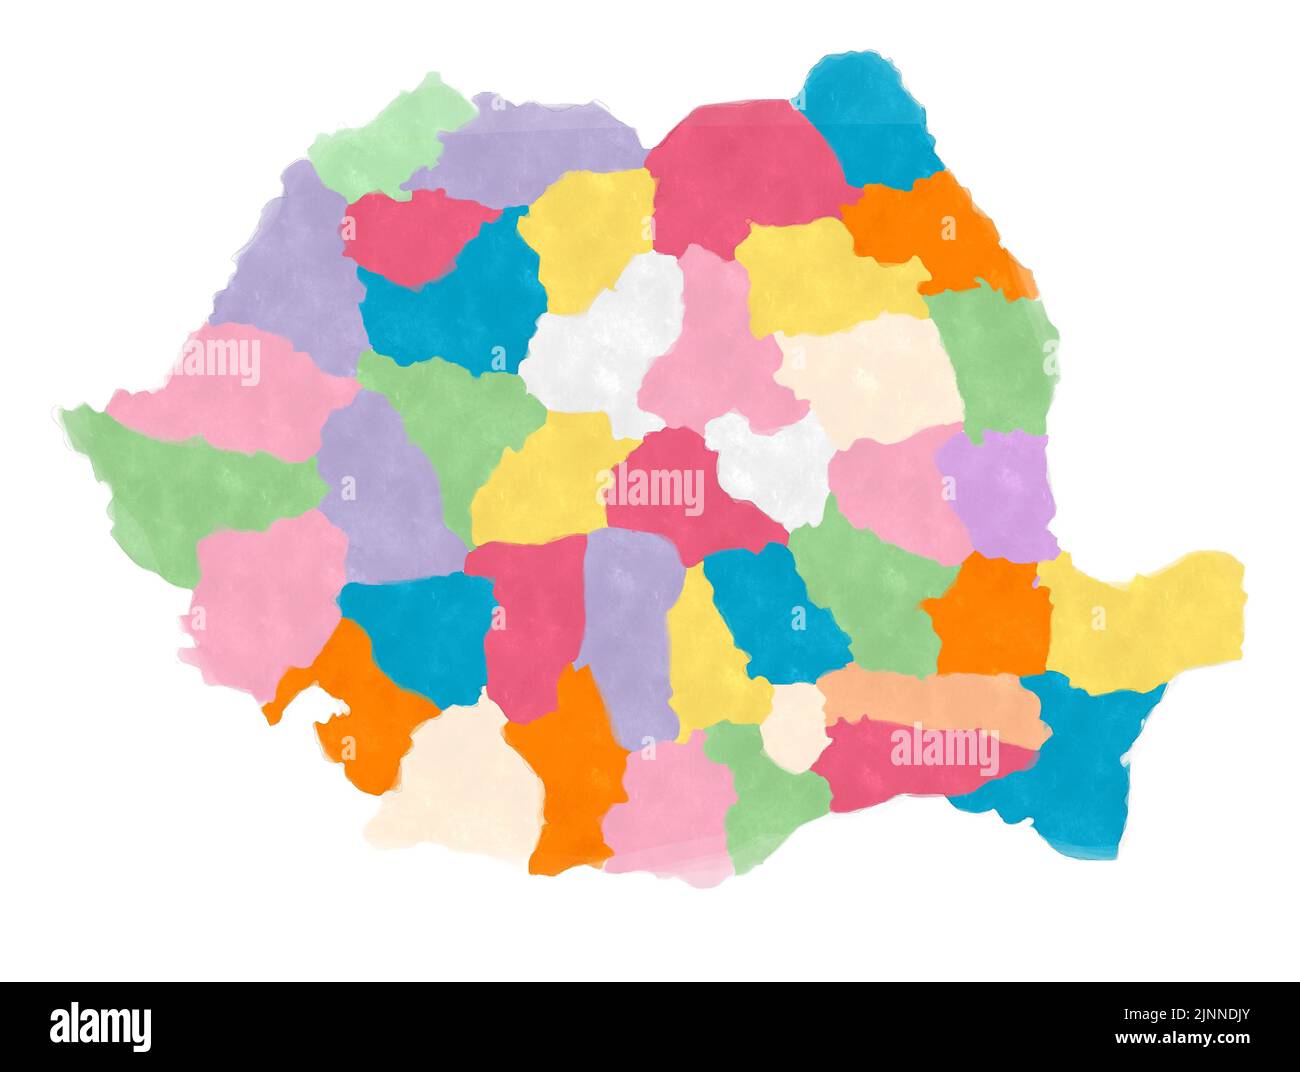 Mapa de Rumanía en acuarelas sobre fondo blanco Foto de stock